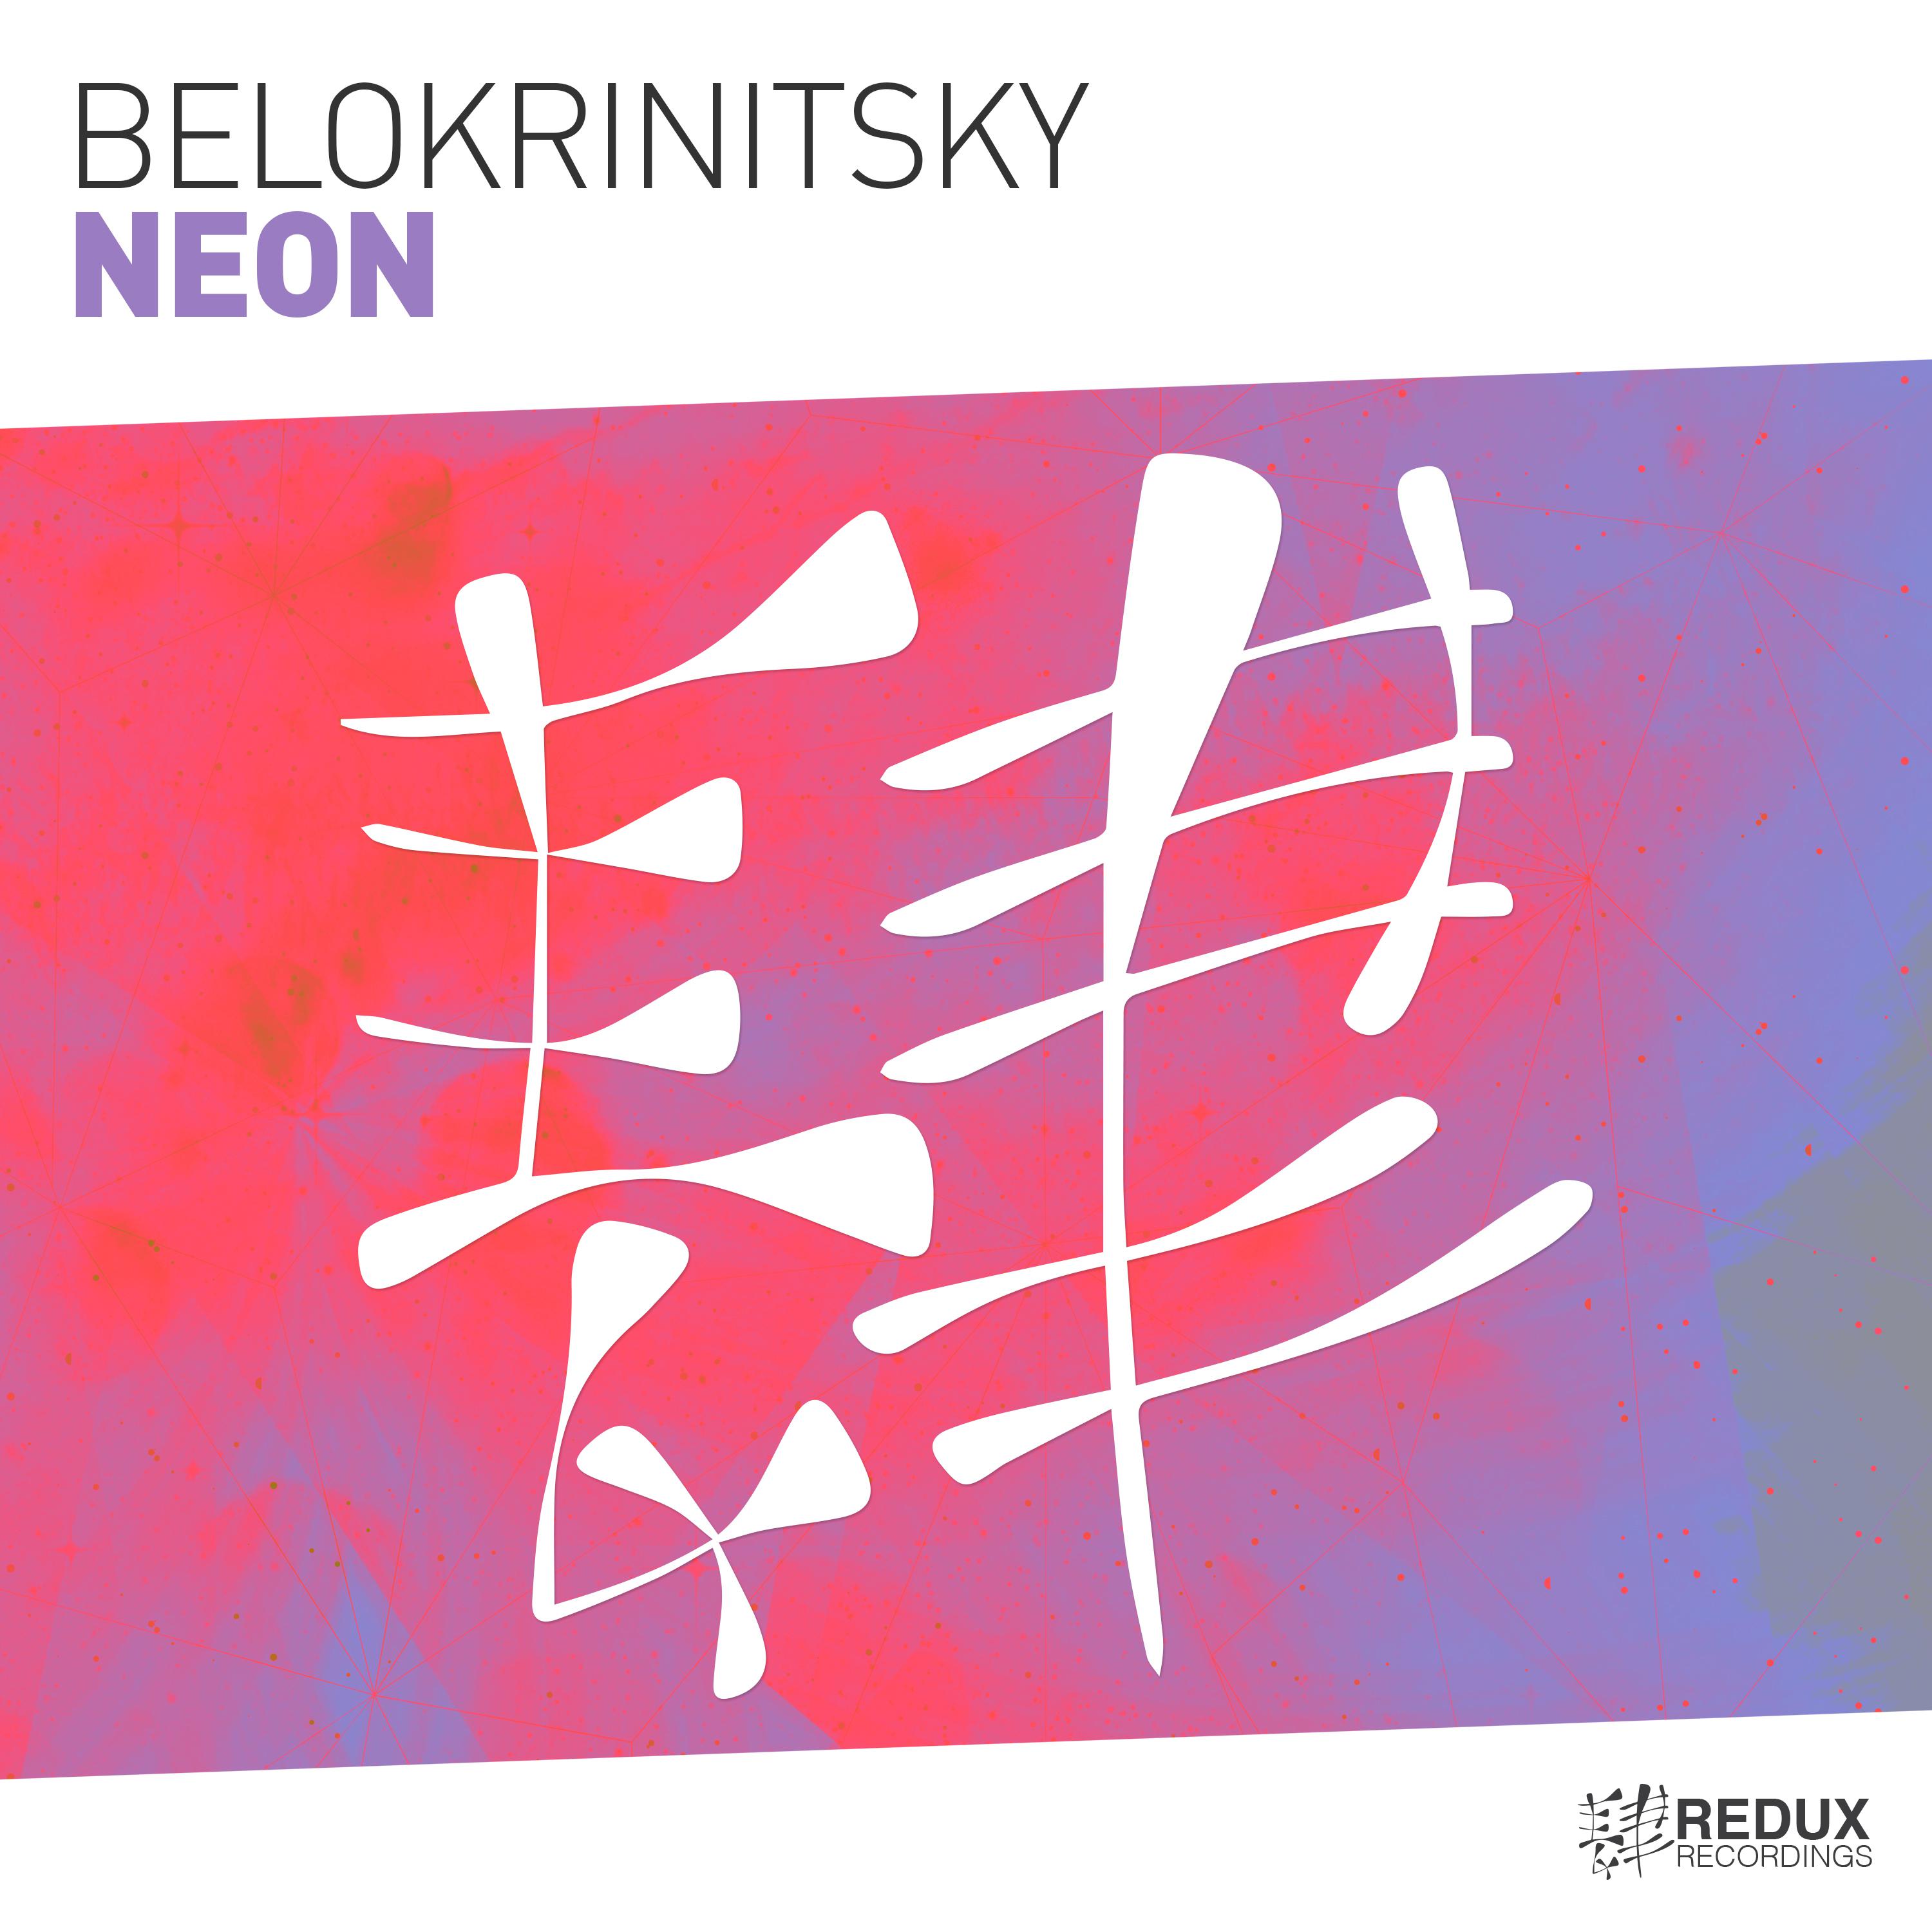 Belokrinitsky - Neon (Extended Mix)